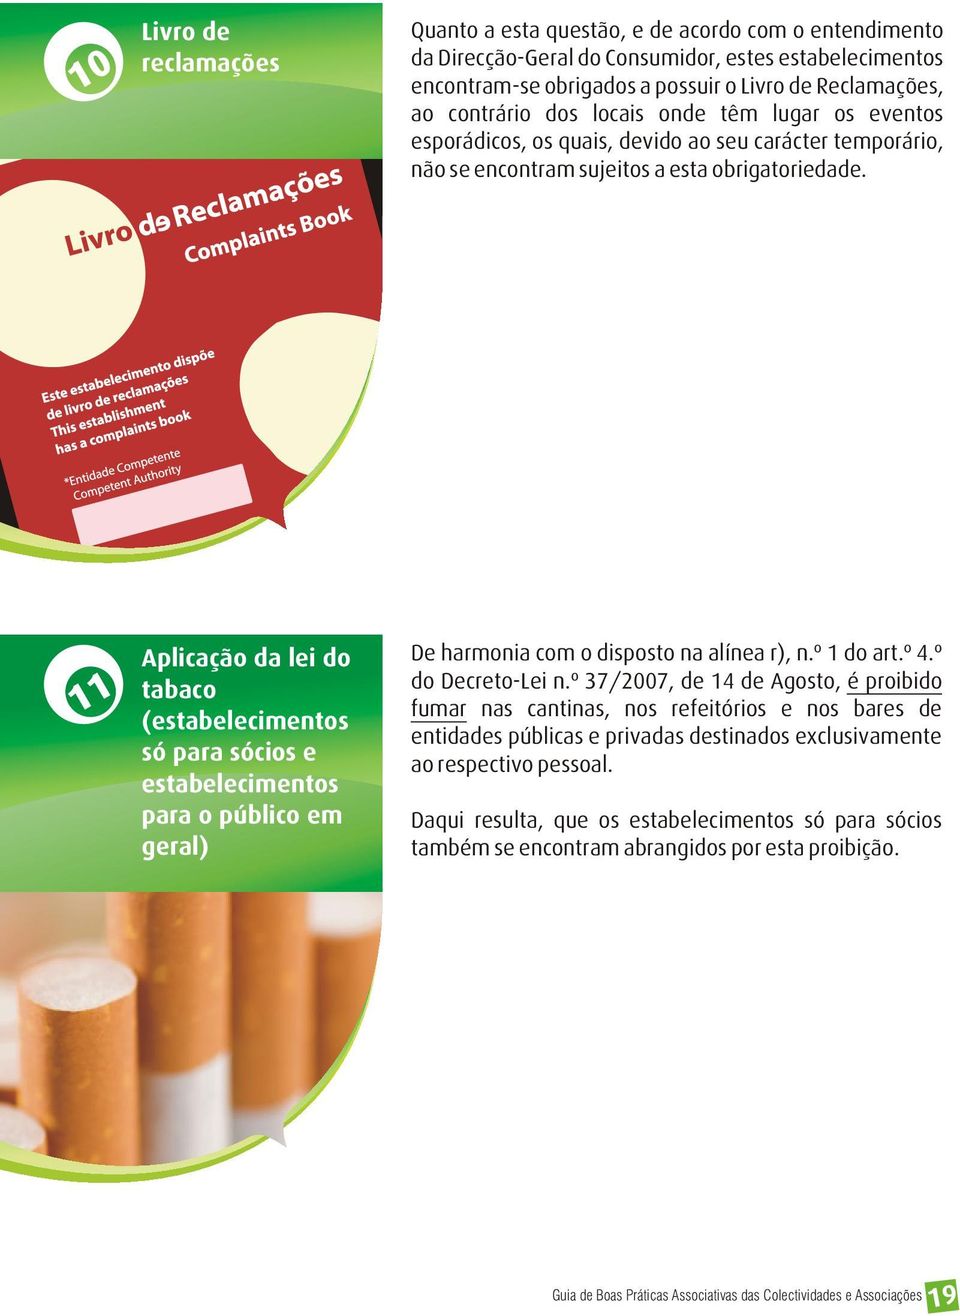 11 Aplicação da lei do tabaco (estabelecimentos só para sócios e estabelecimentos para o público em geral) De harmonia com o disposto na alínea r), n.º 1 do art.º 4.º do Decreto-Lei n.